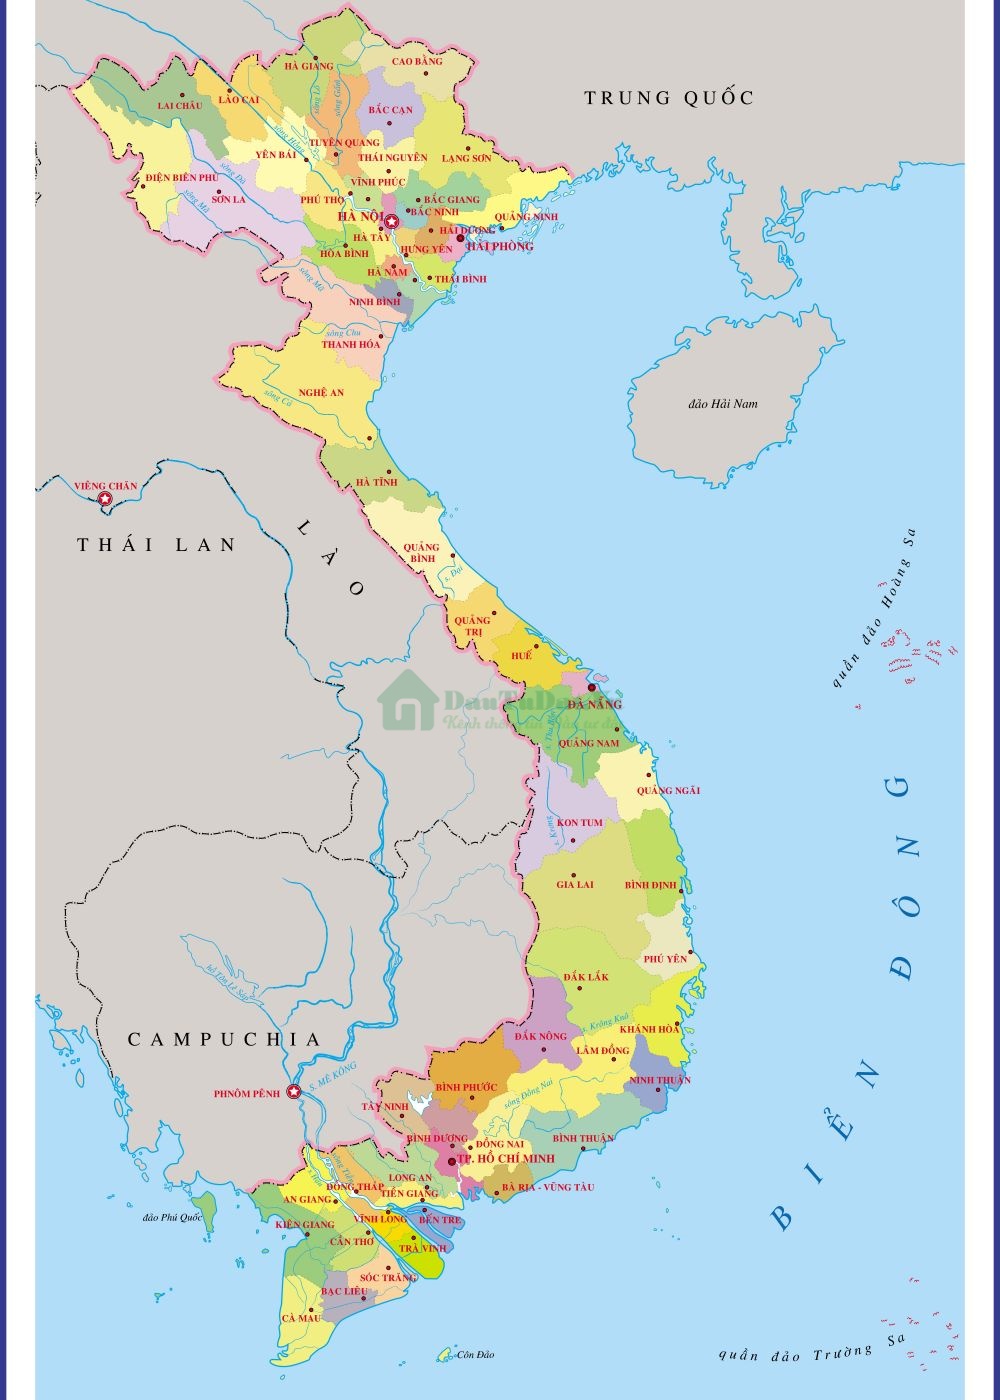 Với Bản đồ Giao thông Việt Nam 2022, bạn sẽ dễ dàng di chuyển trong các thành phố lớn và tránh được kẹt xe. Một số địa điểm du lịch mới sẽ được bổ sung cùng đường đi thuận tiện hơn. Ngoài ra, ứng dụng này giúp bạn cập nhật thông tin về tình trạng giao thông một cách nhanh chóng và chính xác.